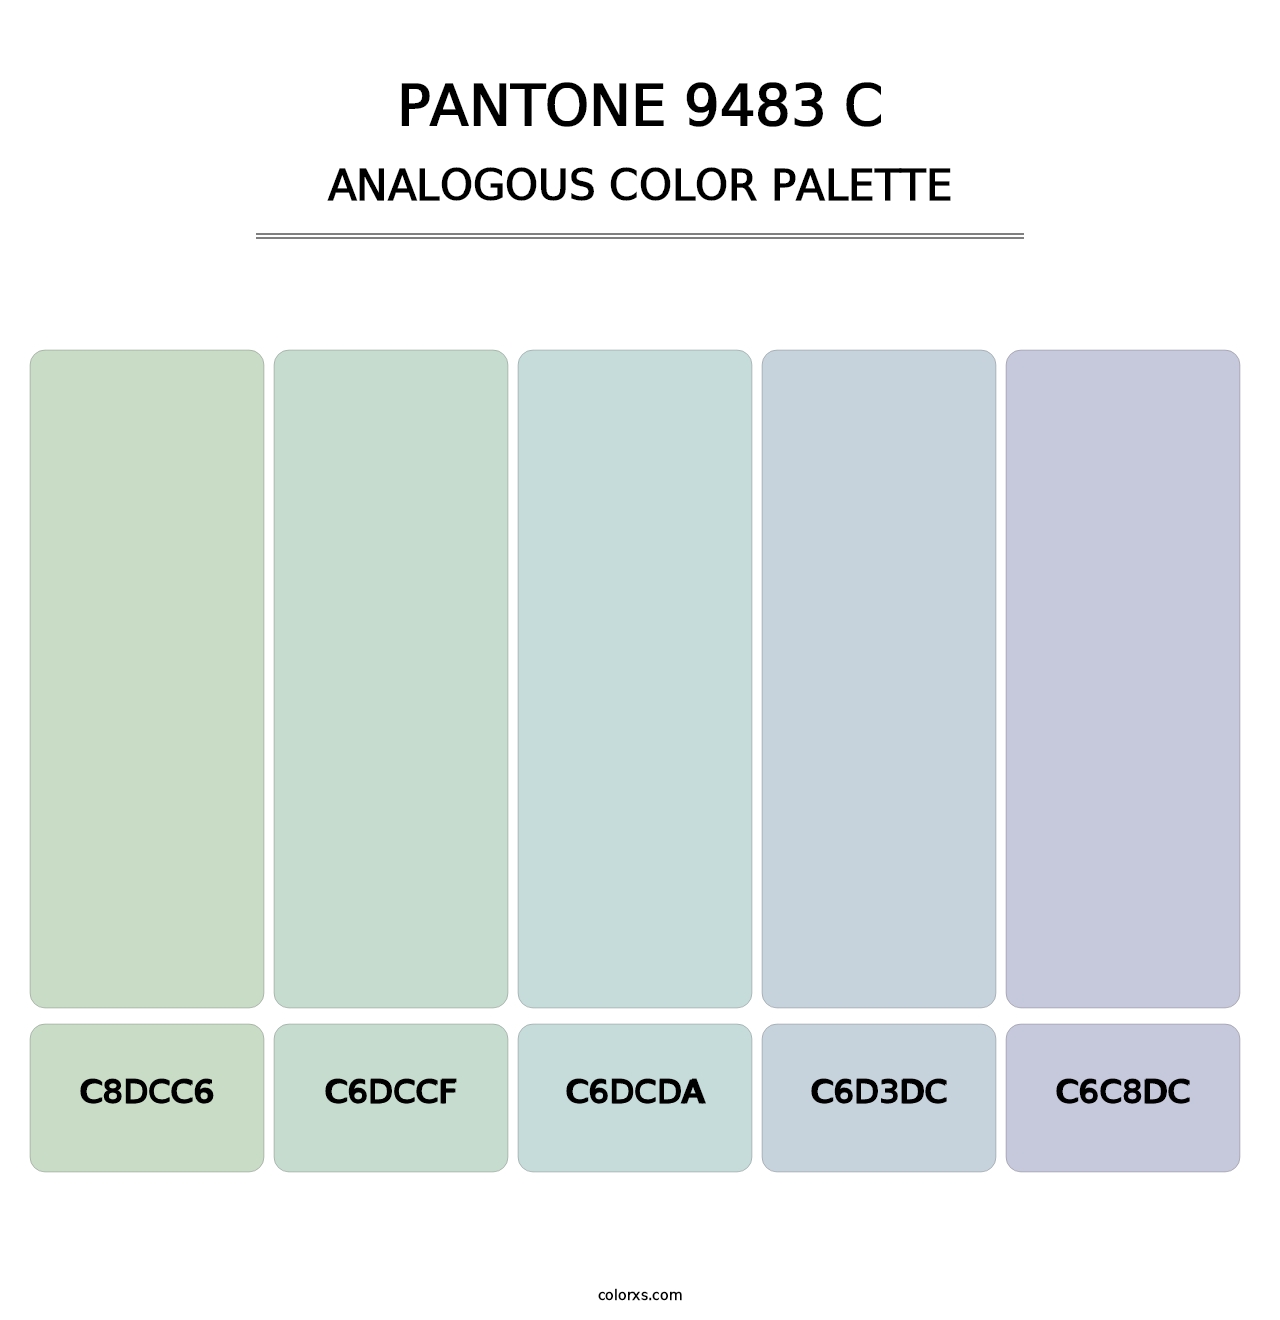 PANTONE 9483 C - Analogous Color Palette